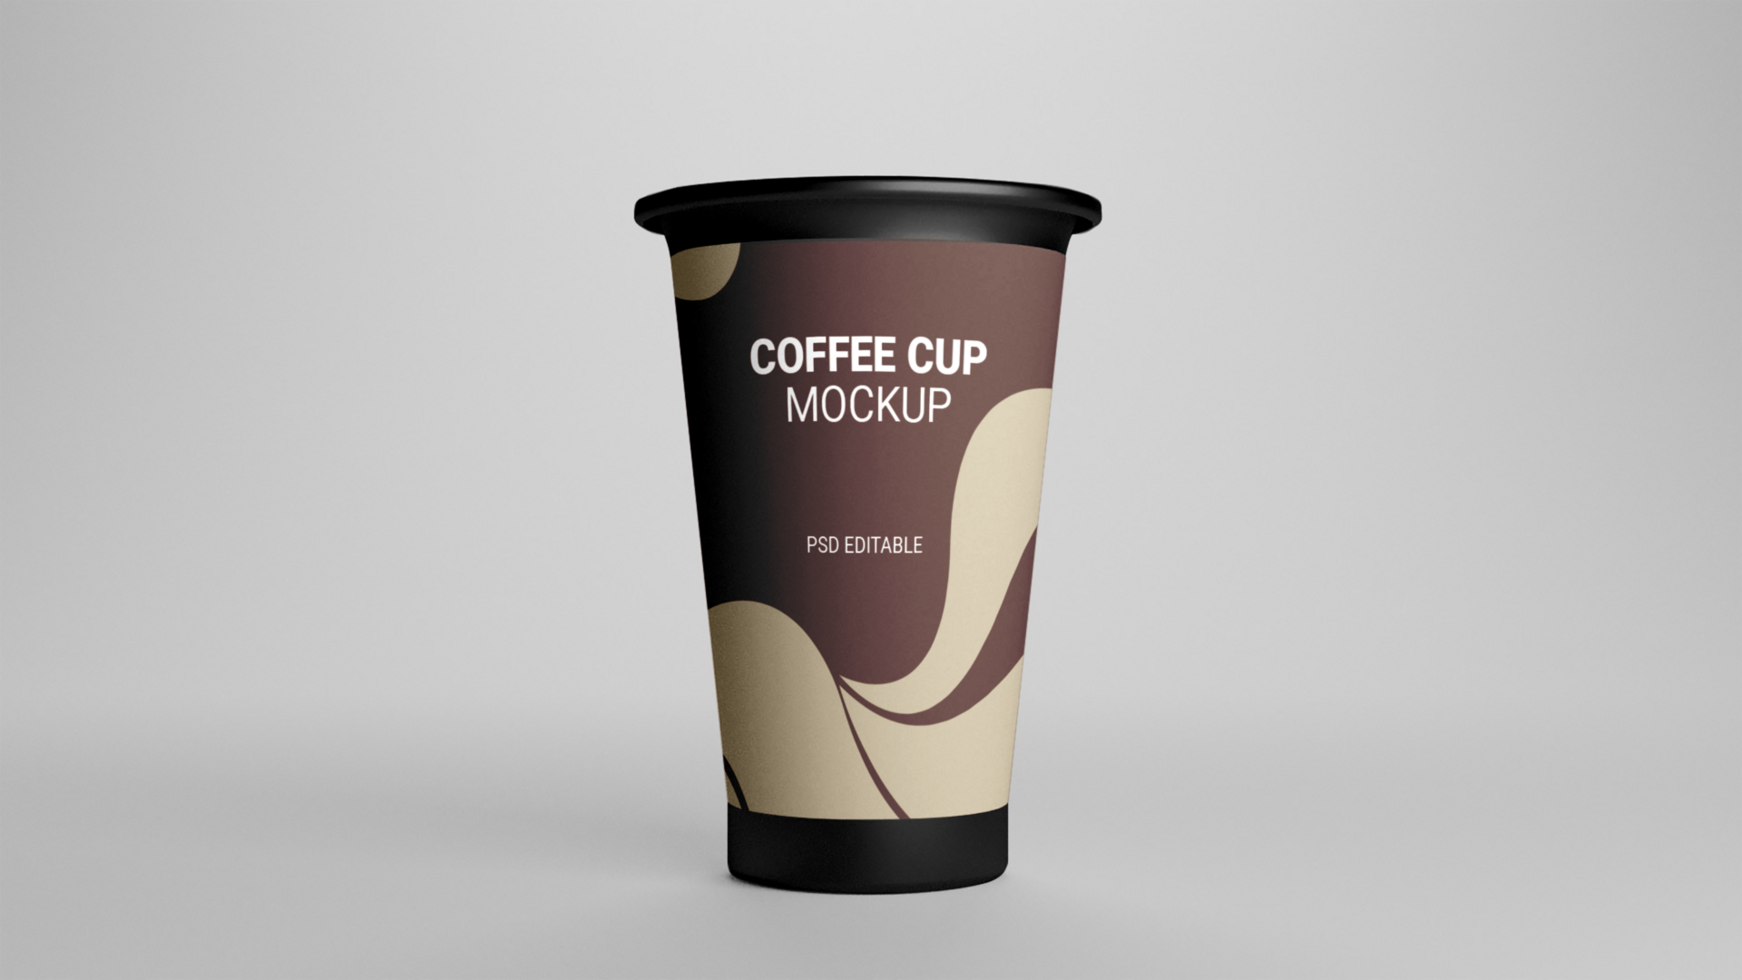 PSD coffee cup mockup free